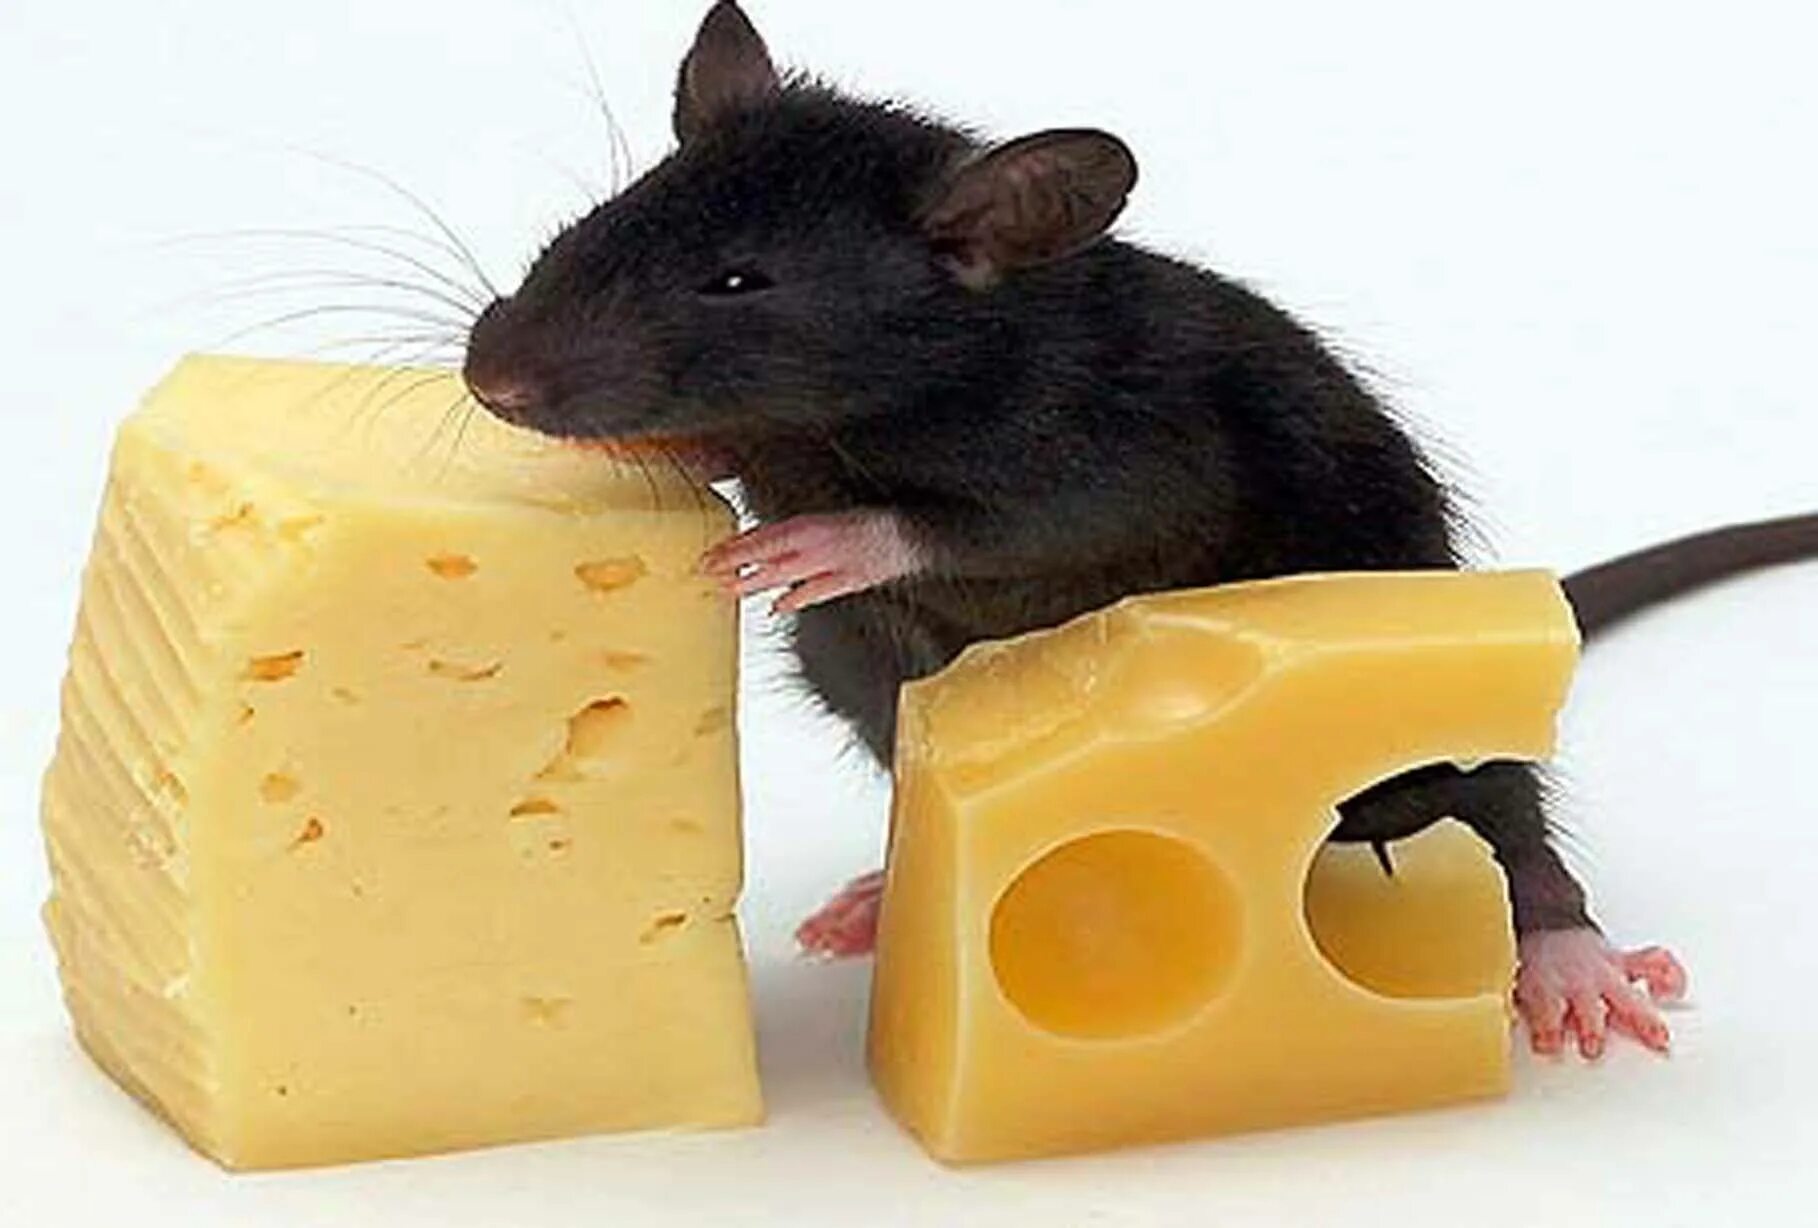 Мышь+сыр. Мышка в сыре. Мышка с сыром. Мышь с куском сыра. Про мышей и сыр